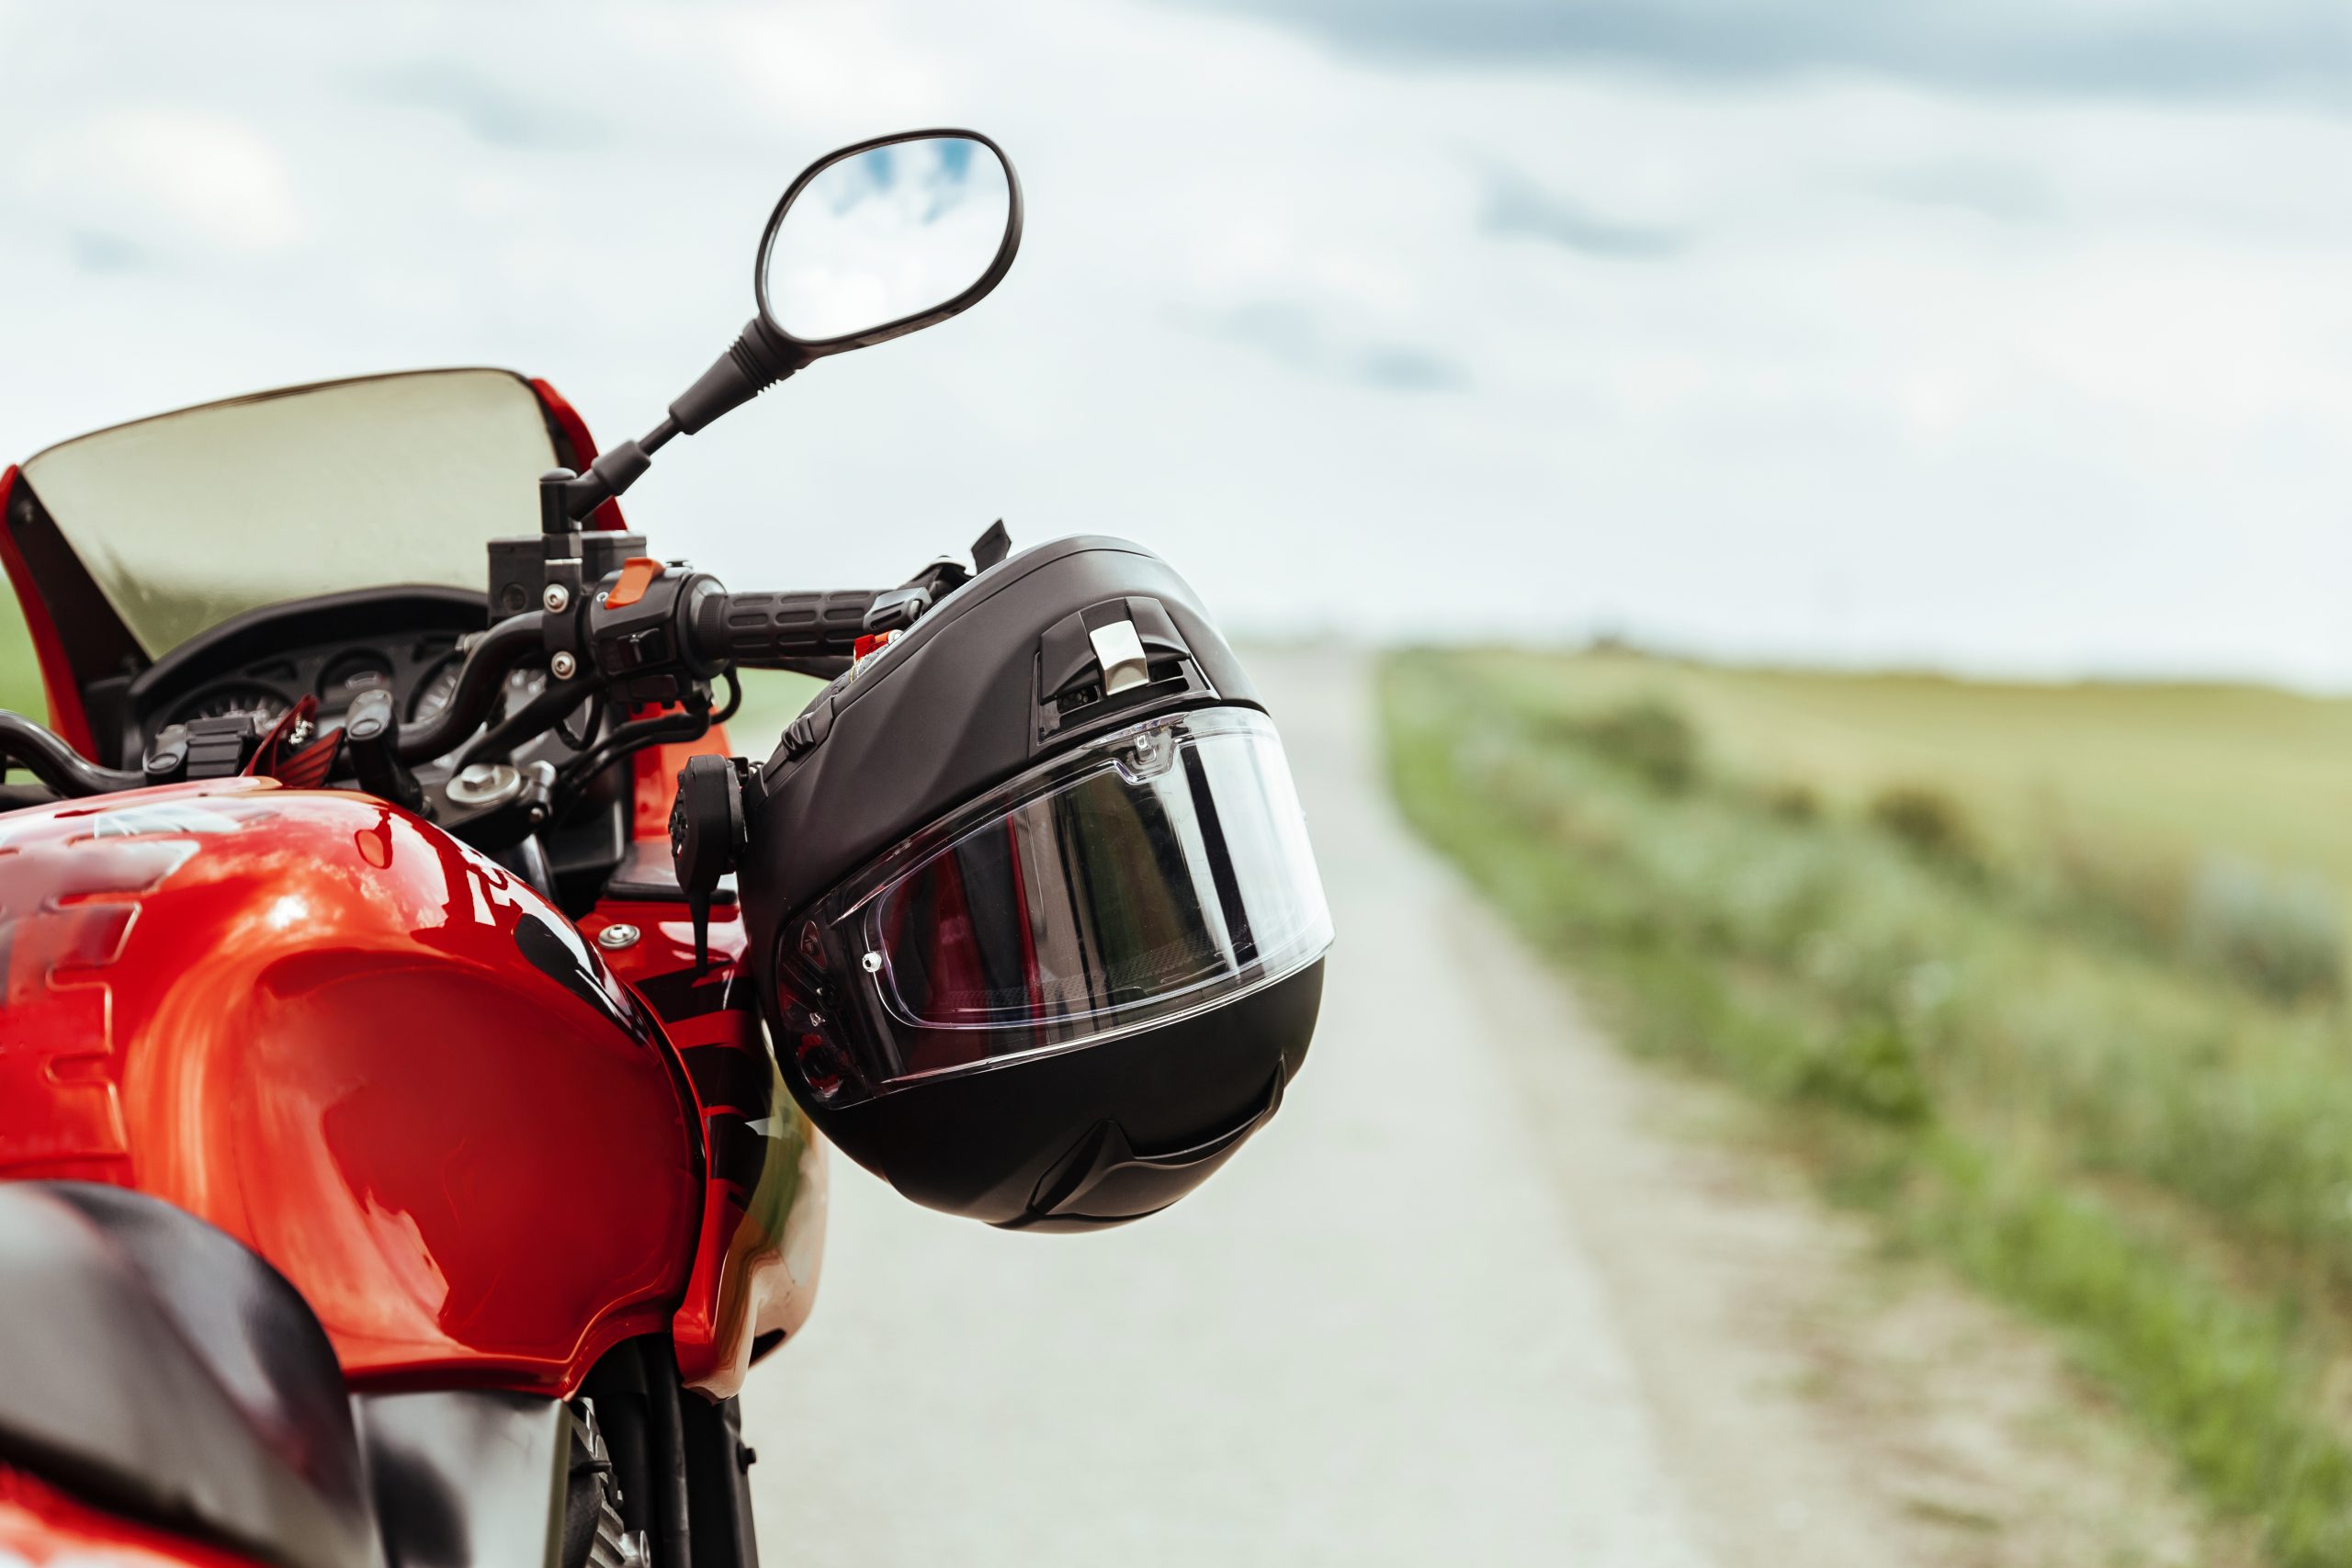 California's Motorcycle Helmet Laws